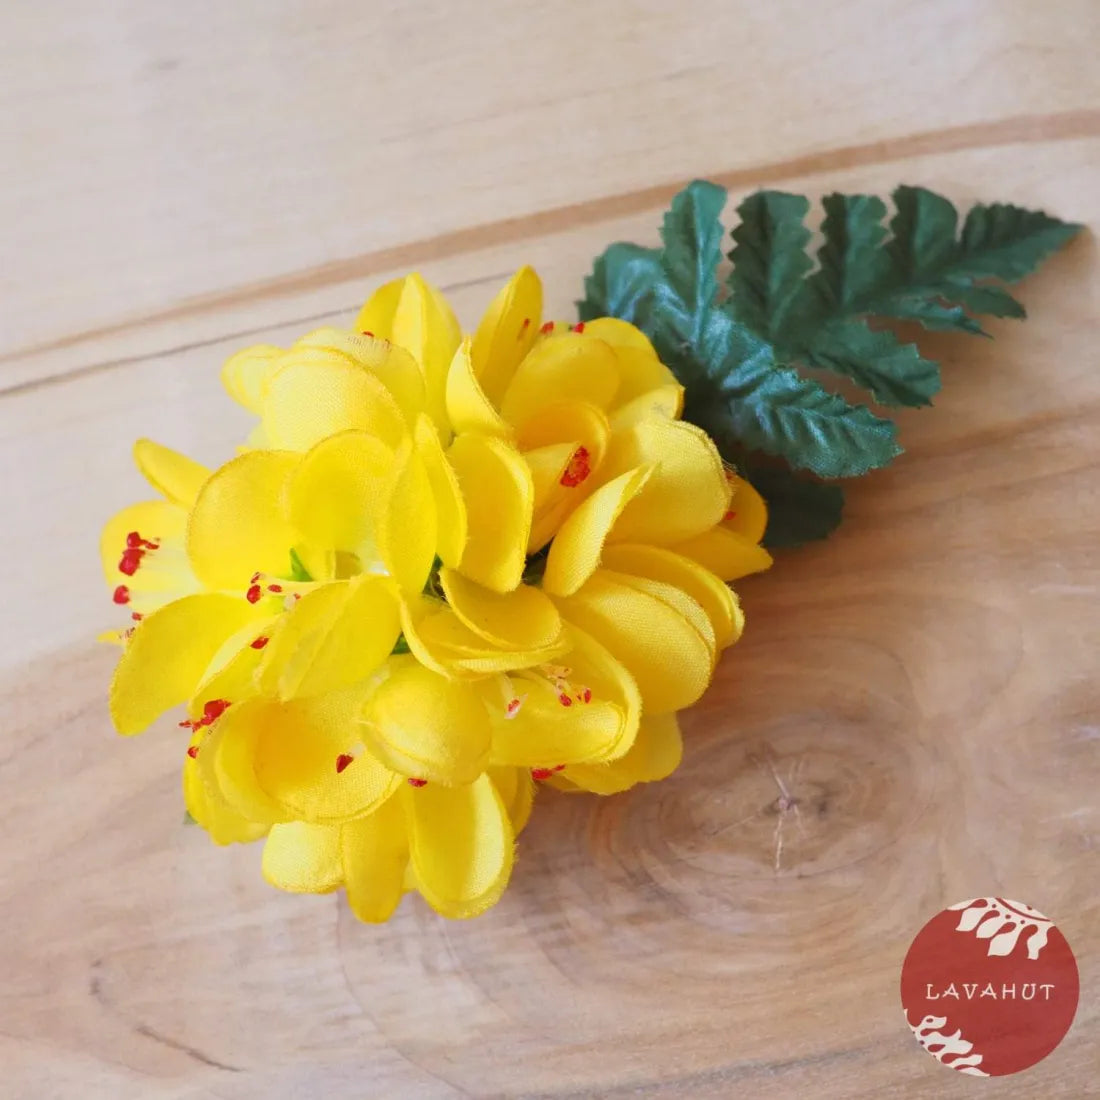 Ruffled Petals Yellow Hawaiian Flower Hair Clip - Made In Hawaii